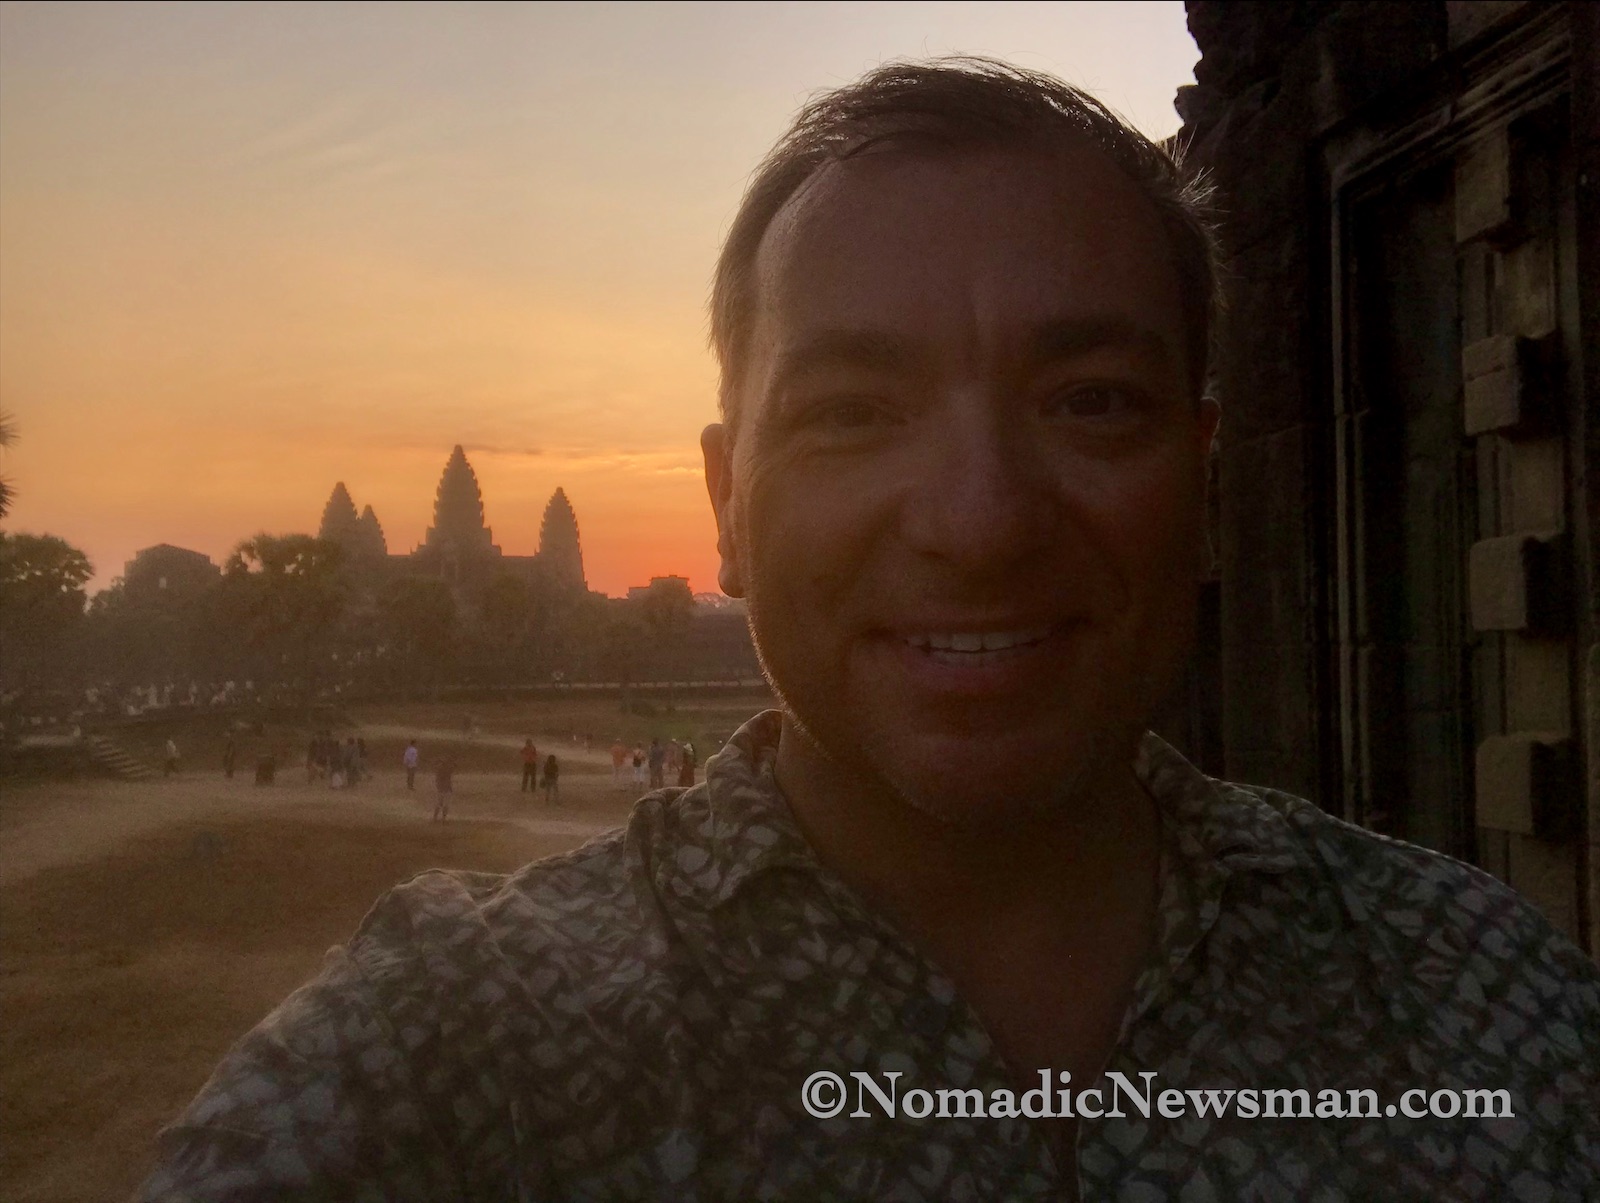 Joey at Angkor Wat